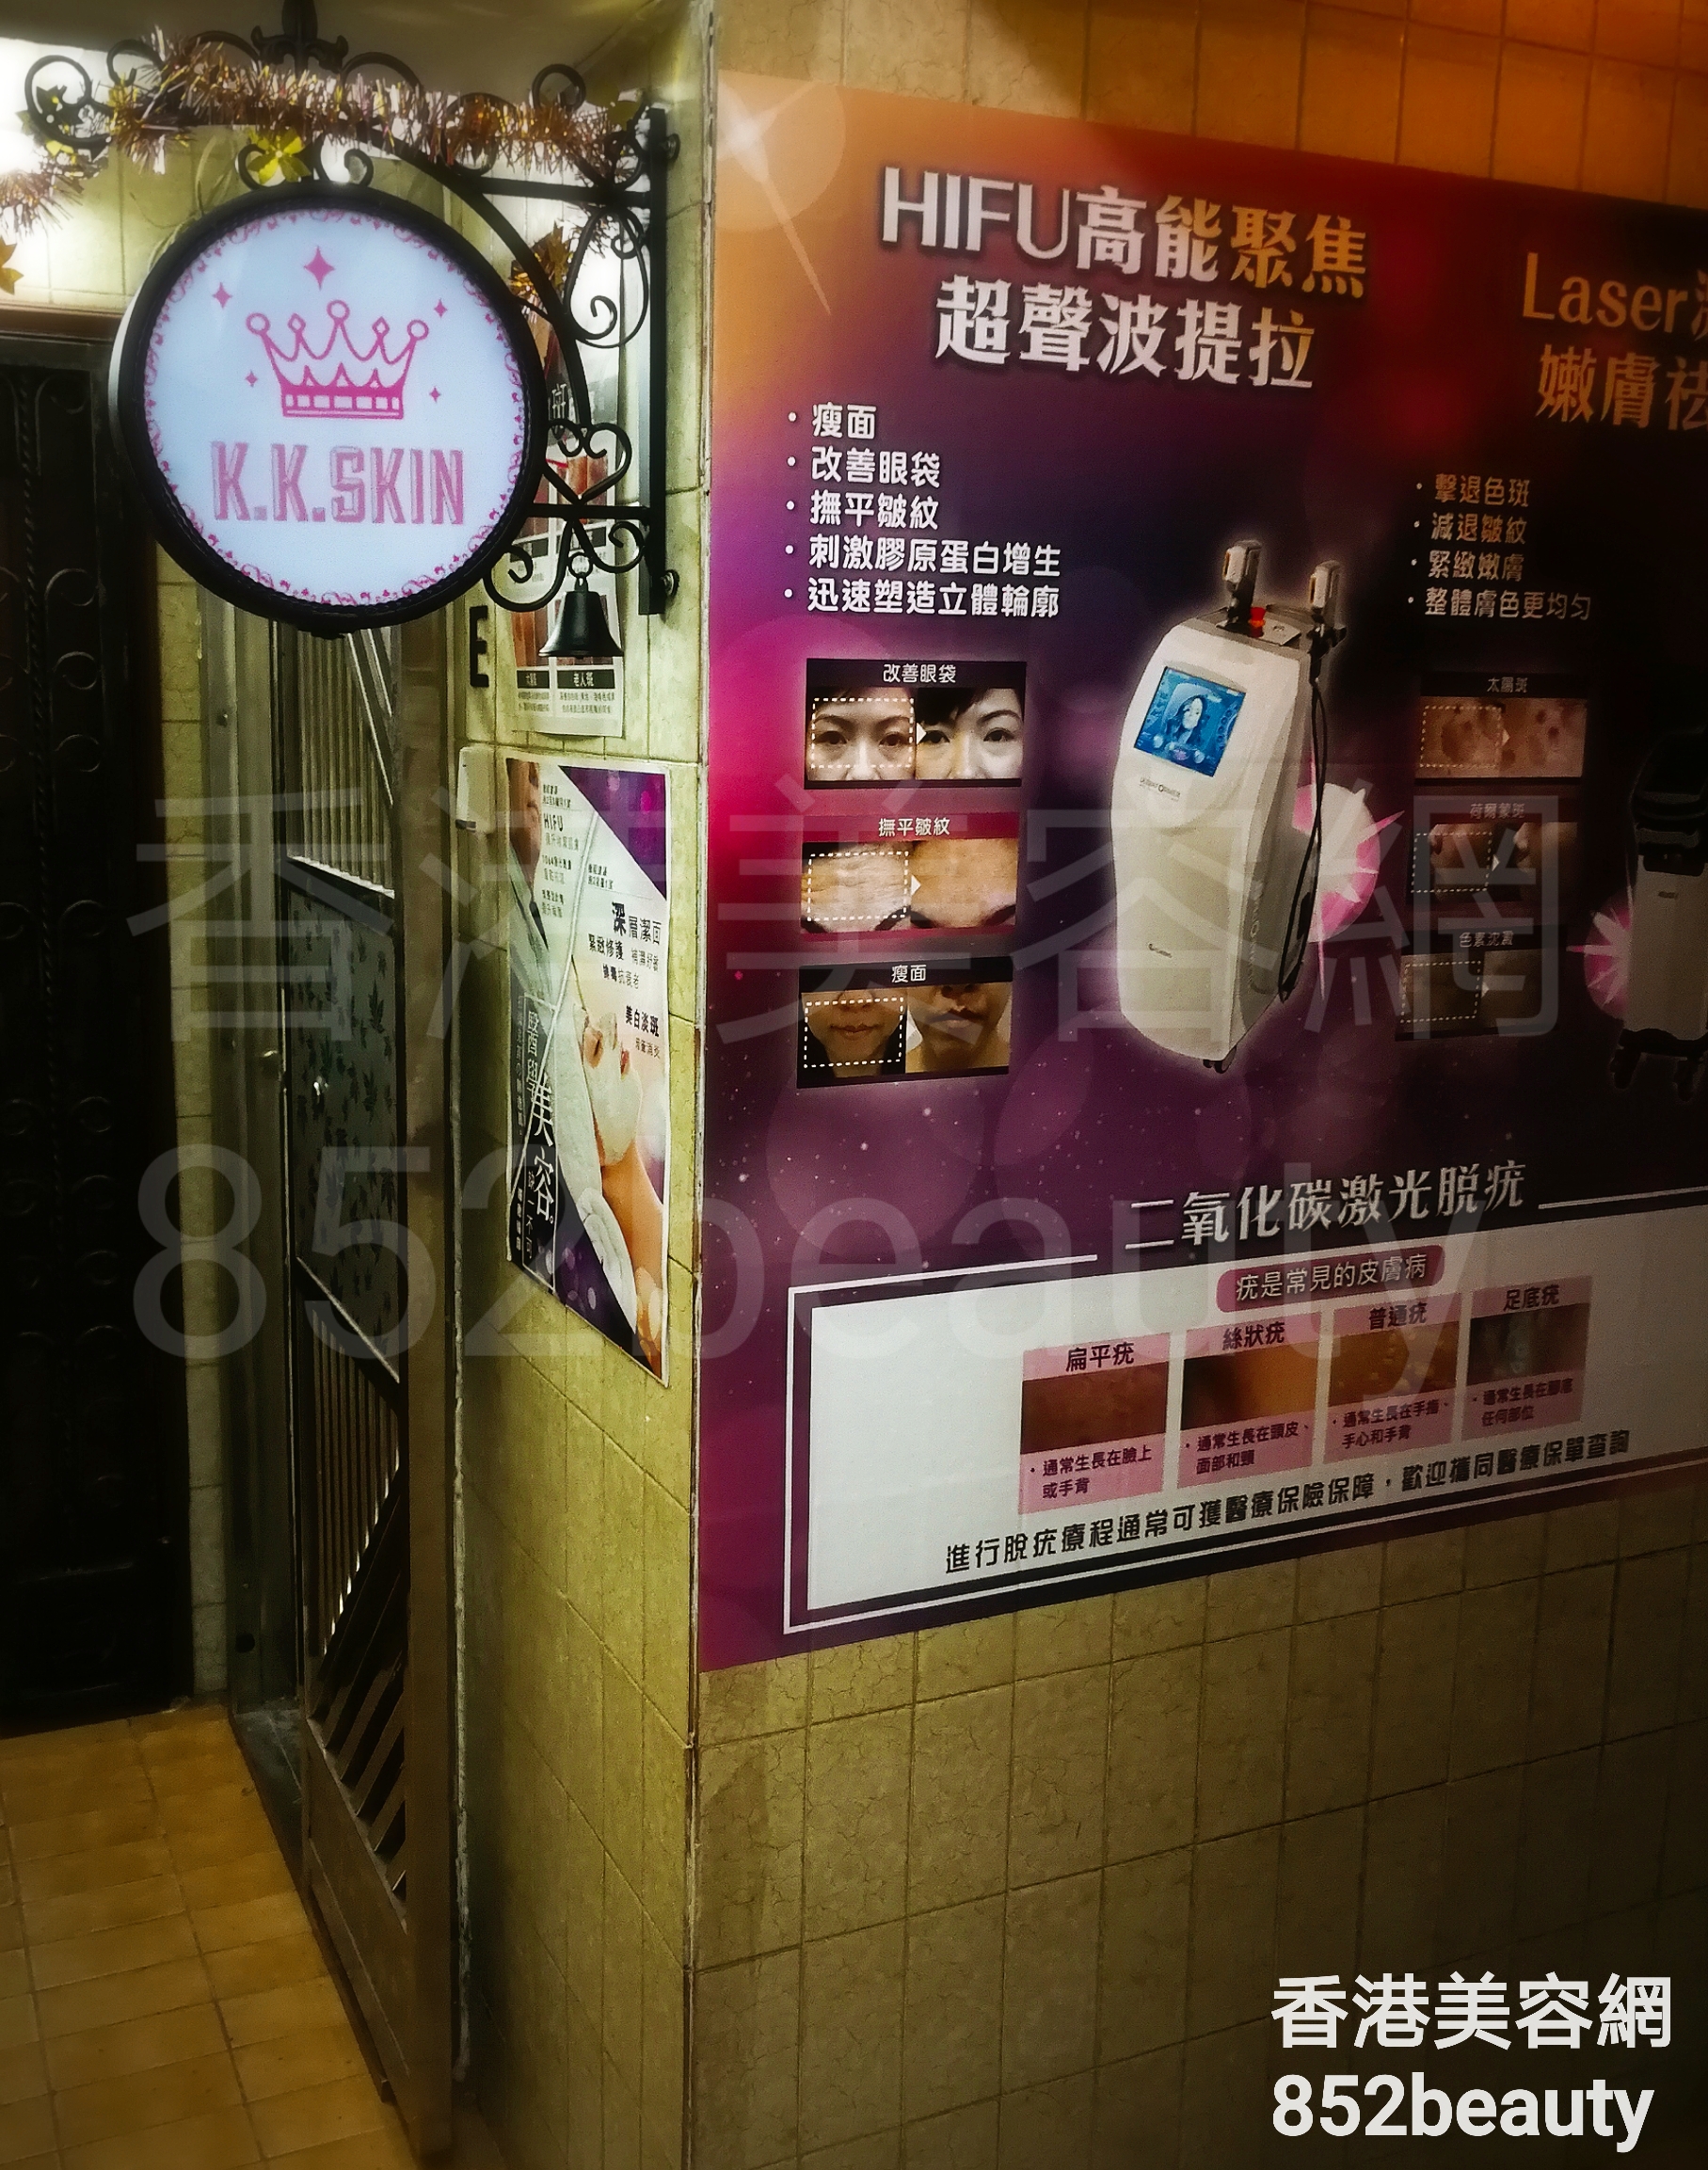 香港美容網 Hong Kong Beauty Salon 美容院 / 美容師: K.K.SKIN (元朗店)